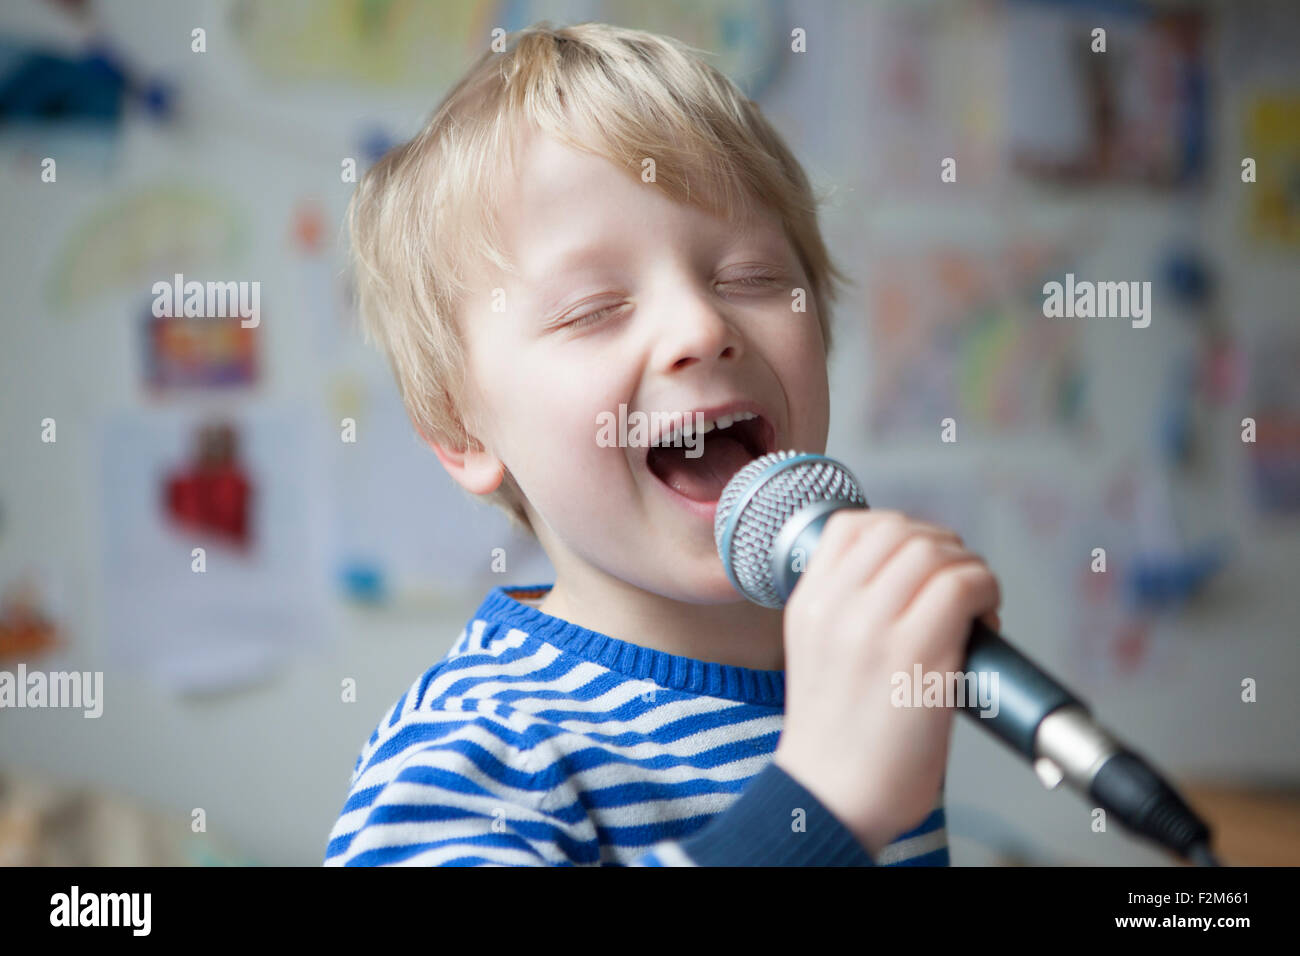 Retrato de niño cantando con micrófono Foto de stock